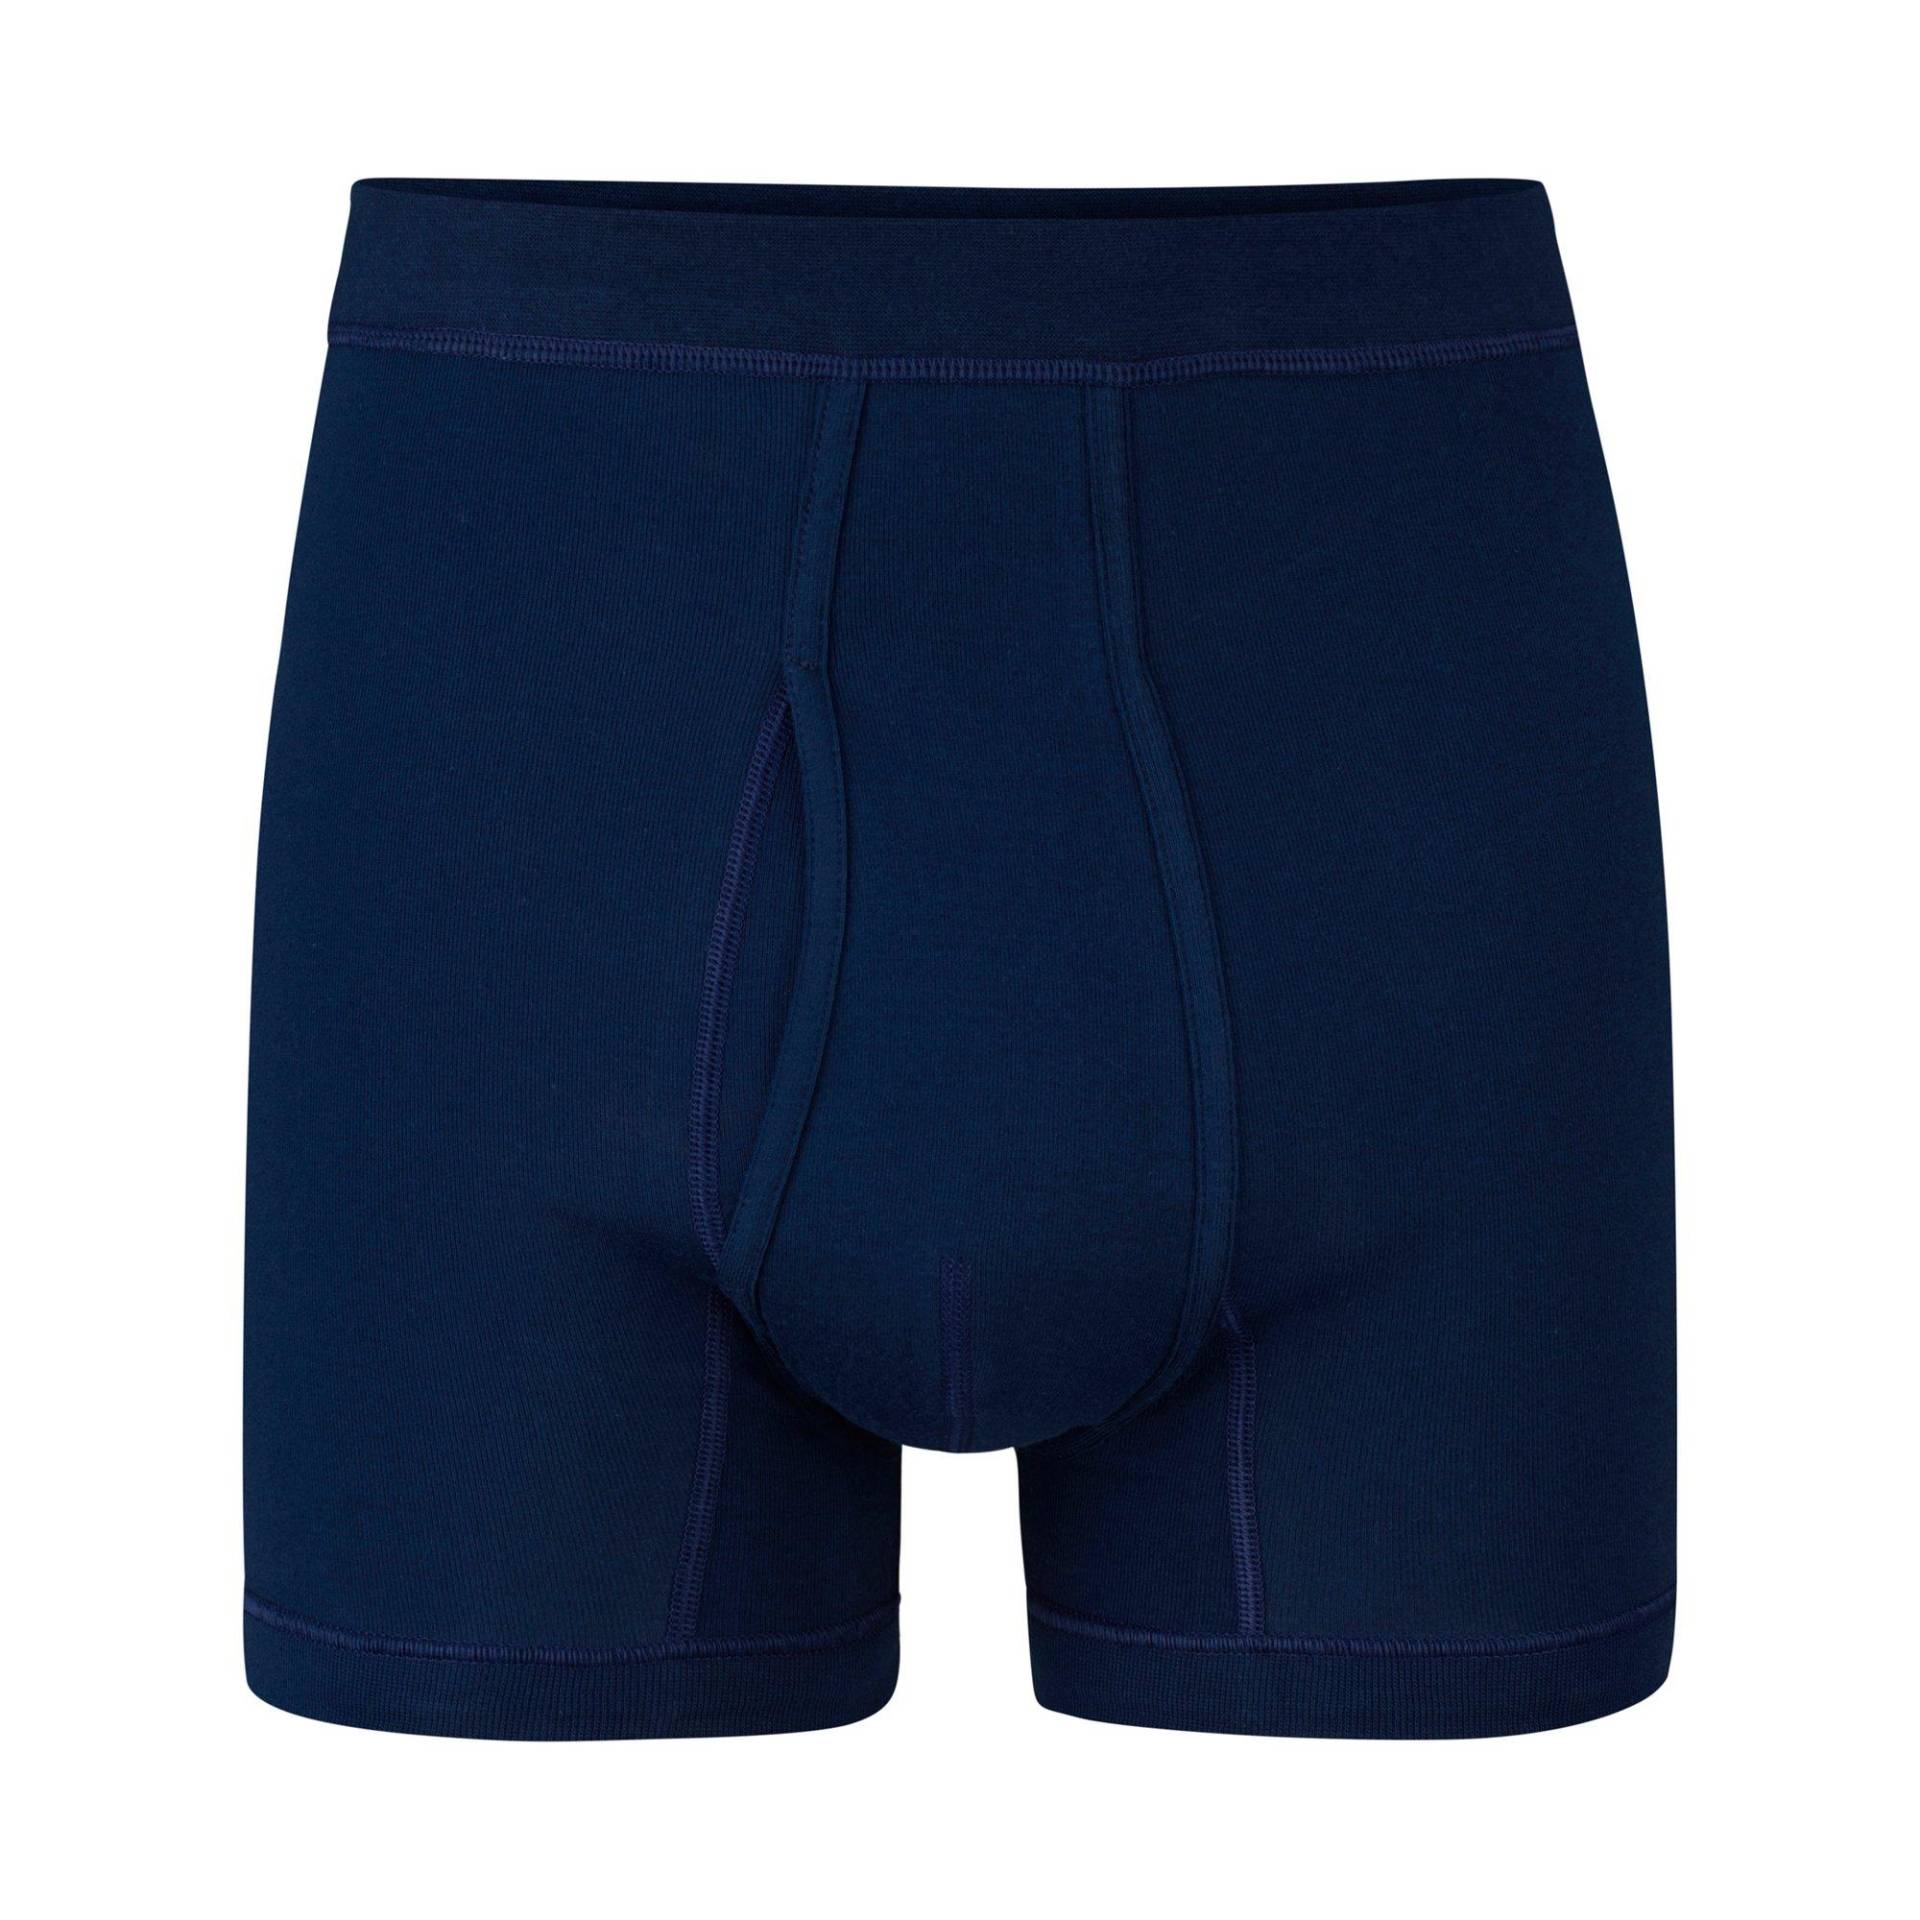 Panty Herren Nachtblau XL von ISA bodywear